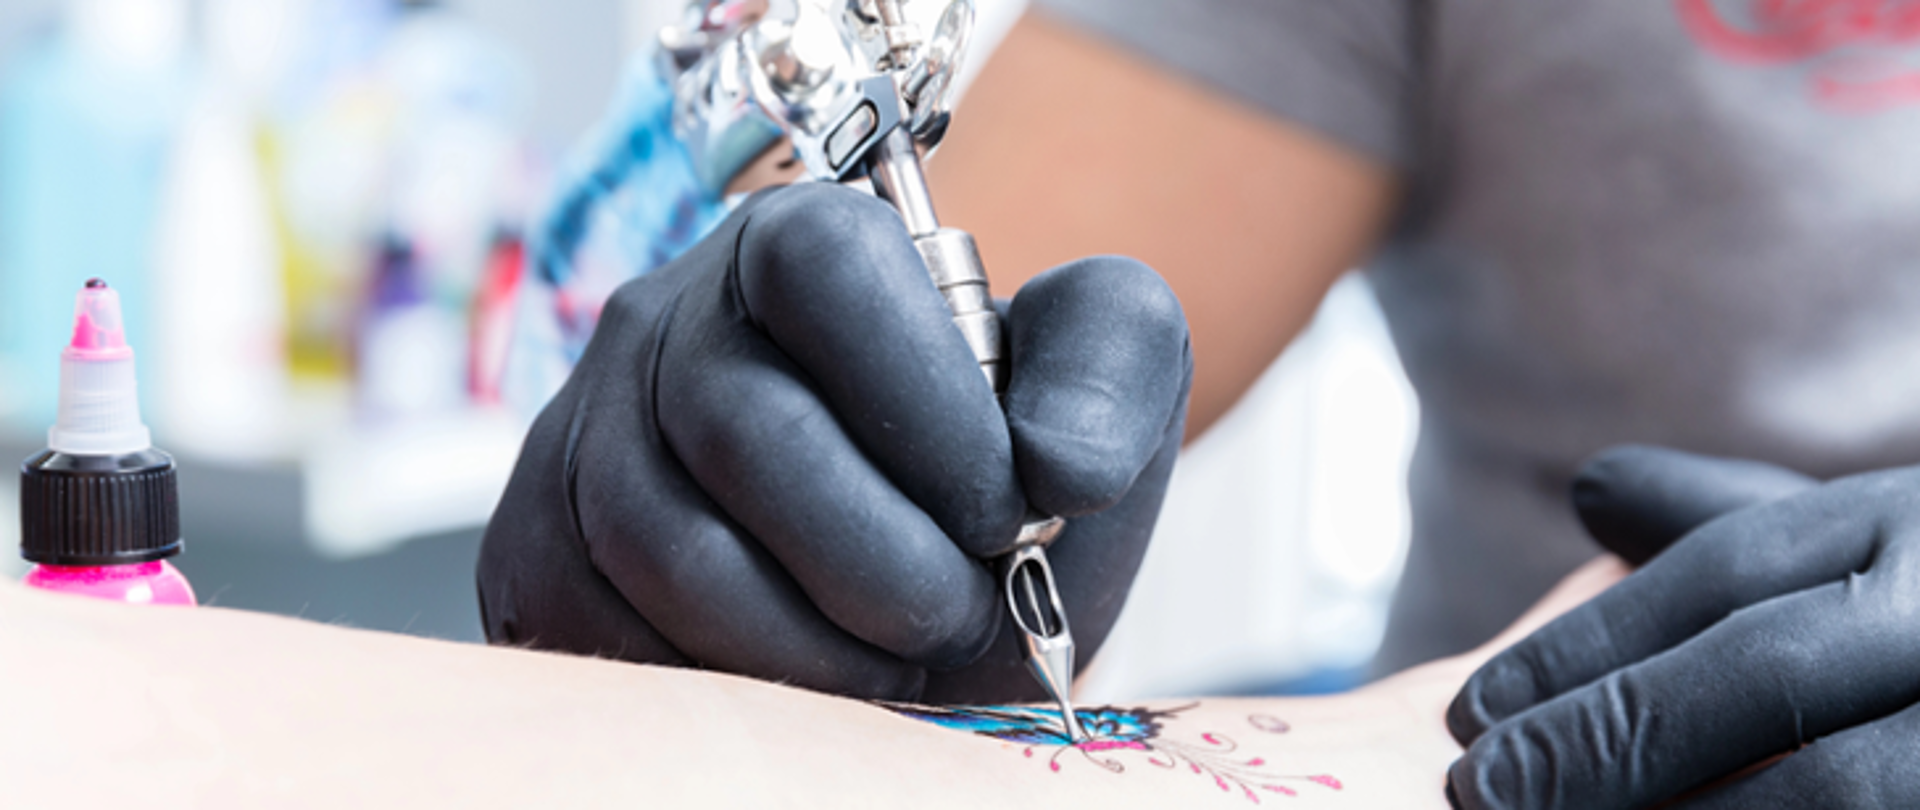 Na pierwszym planie zdjęcia znajdują się dłonie w czarnych lateksowych rękawiczkach trzymająca maszynkę do tatuażu.